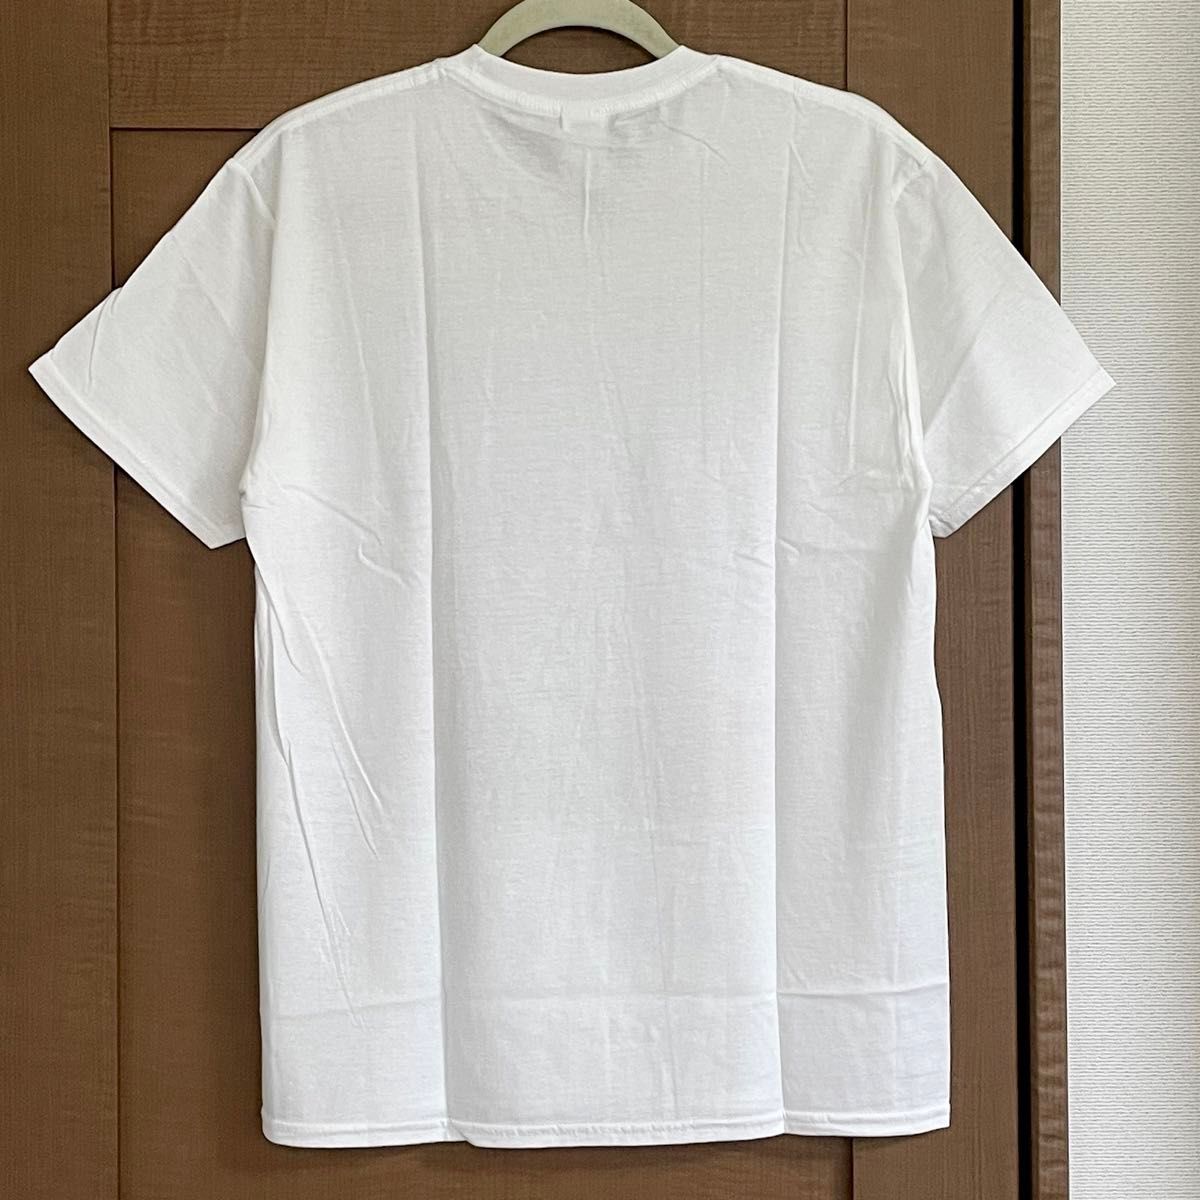 【難あり】Tシャツ バイク レディース メンズ Mサイズ オートバイ ティシャツ ホワイト 半袖 TEE シャツ カットソー